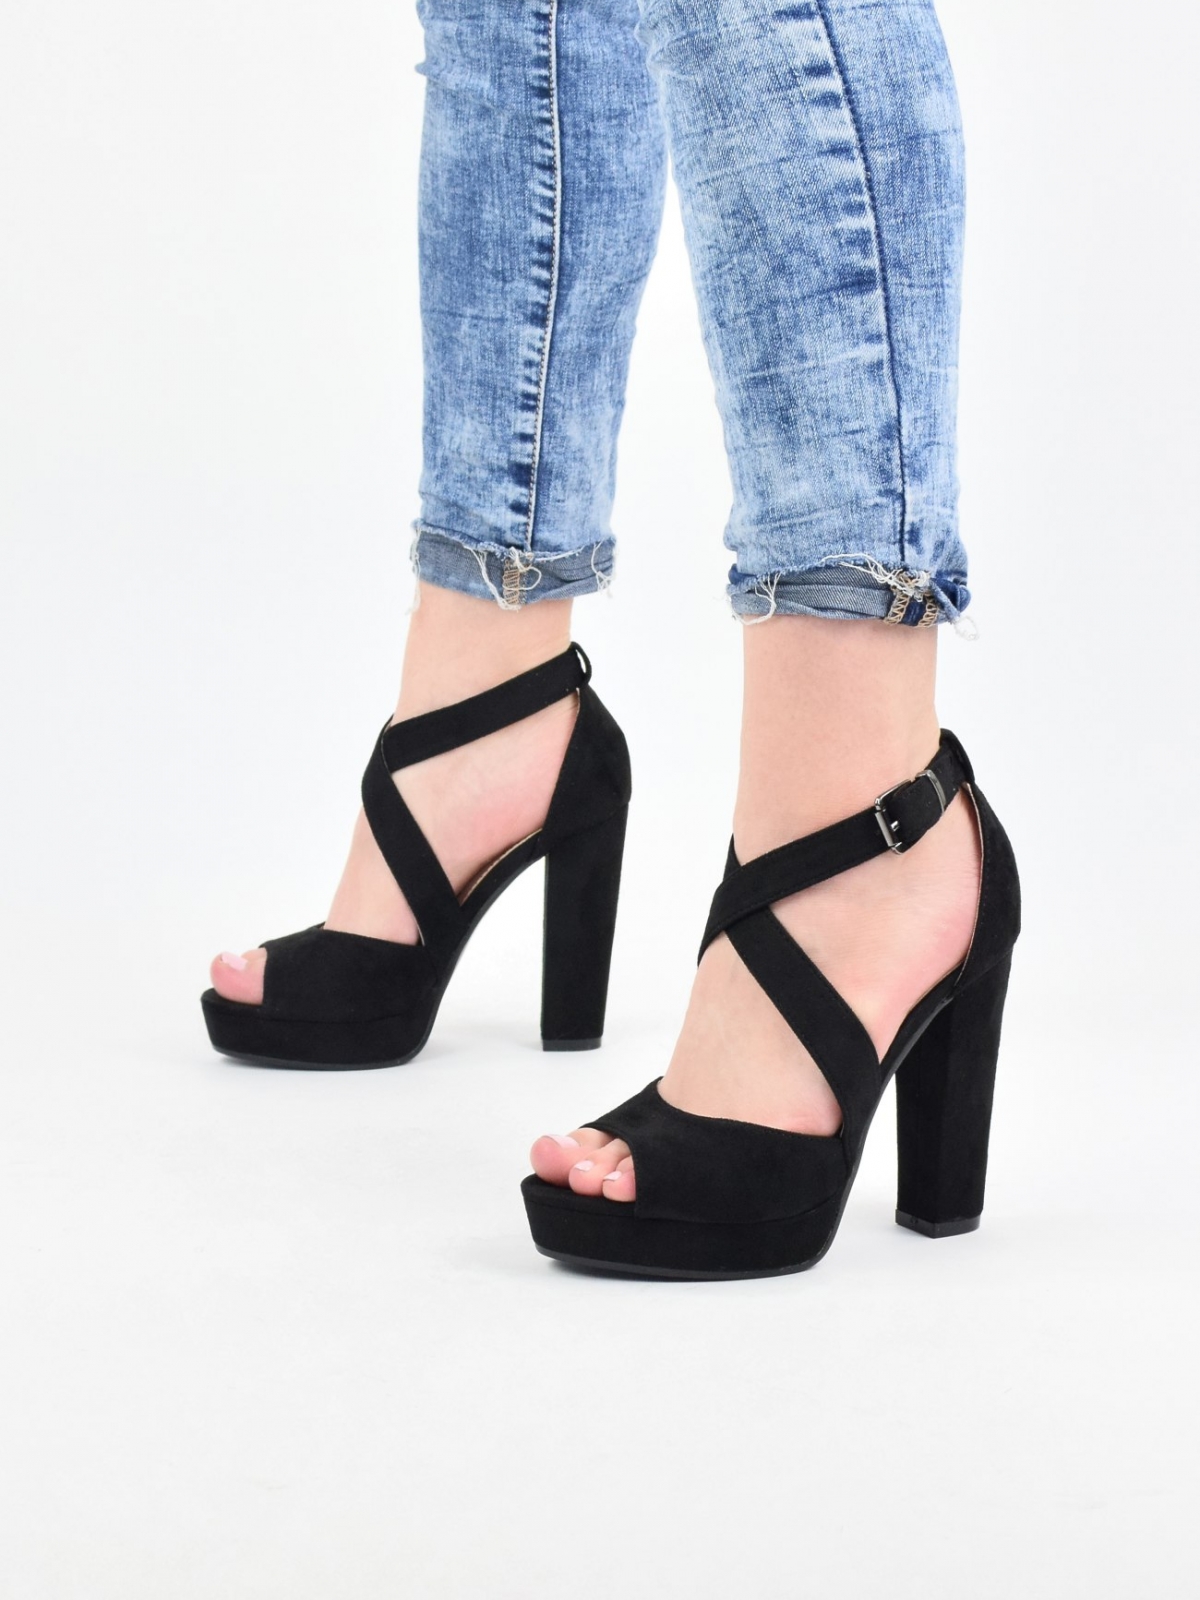 Exclusive high heels with platform in black